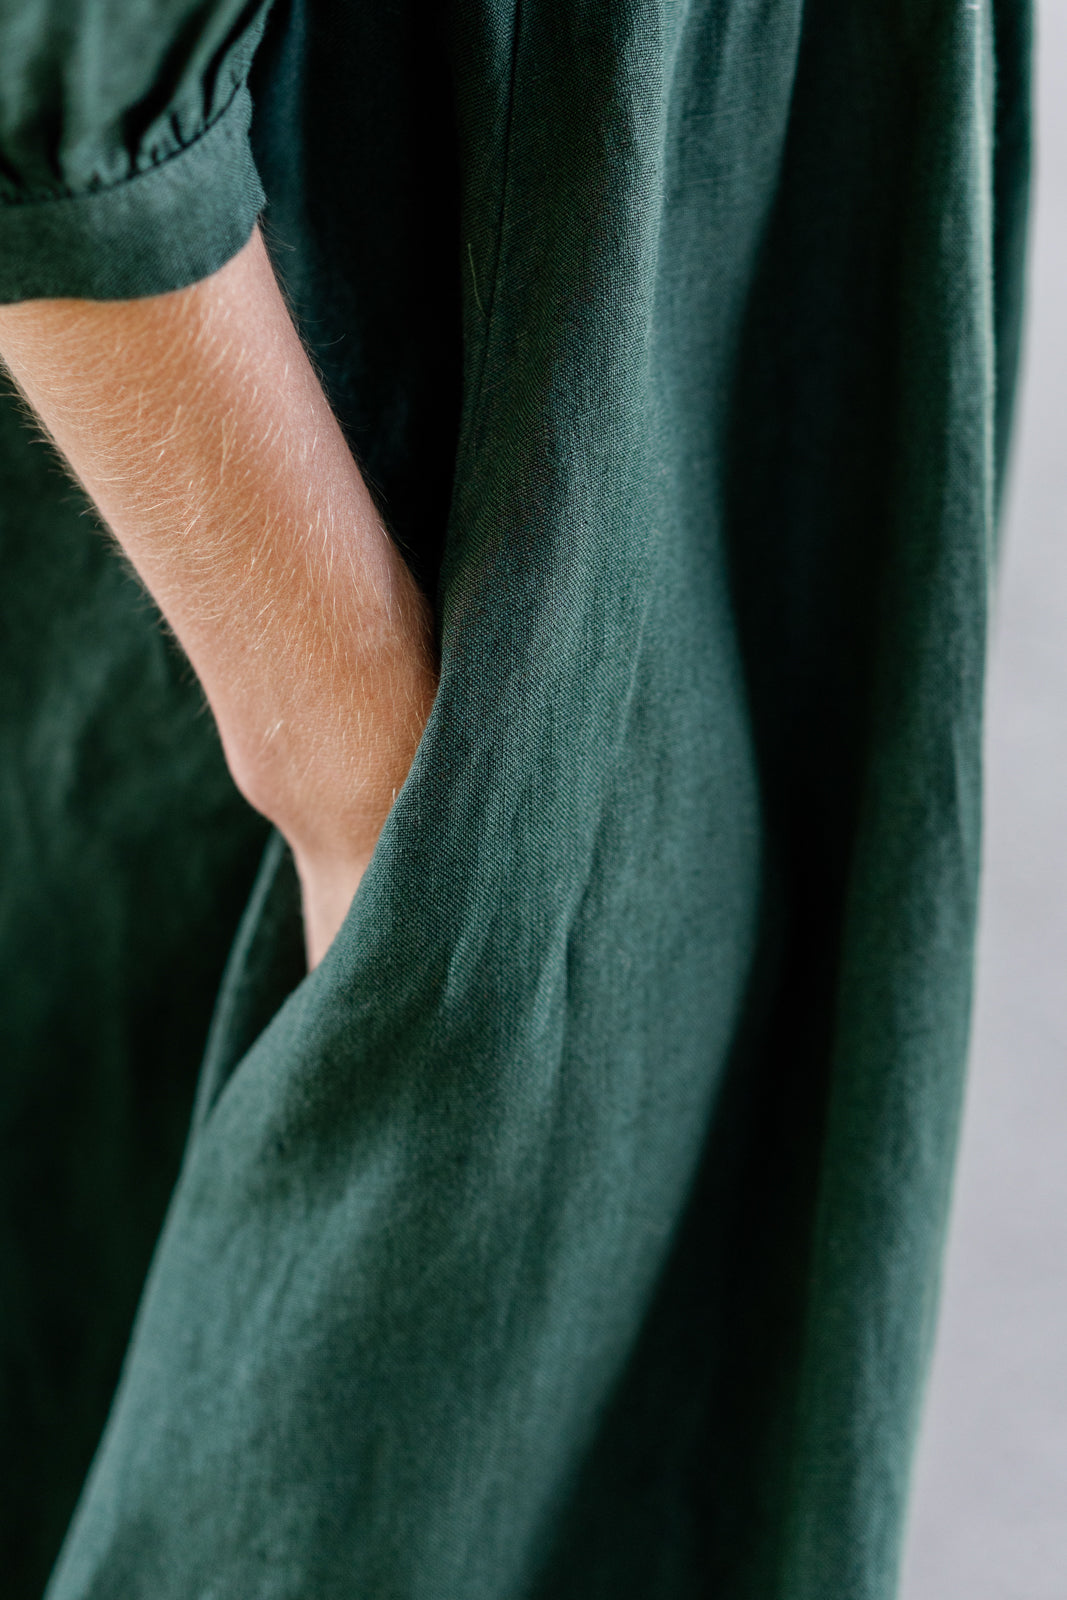 Evergreen linen dress with pockets from Son de Flor